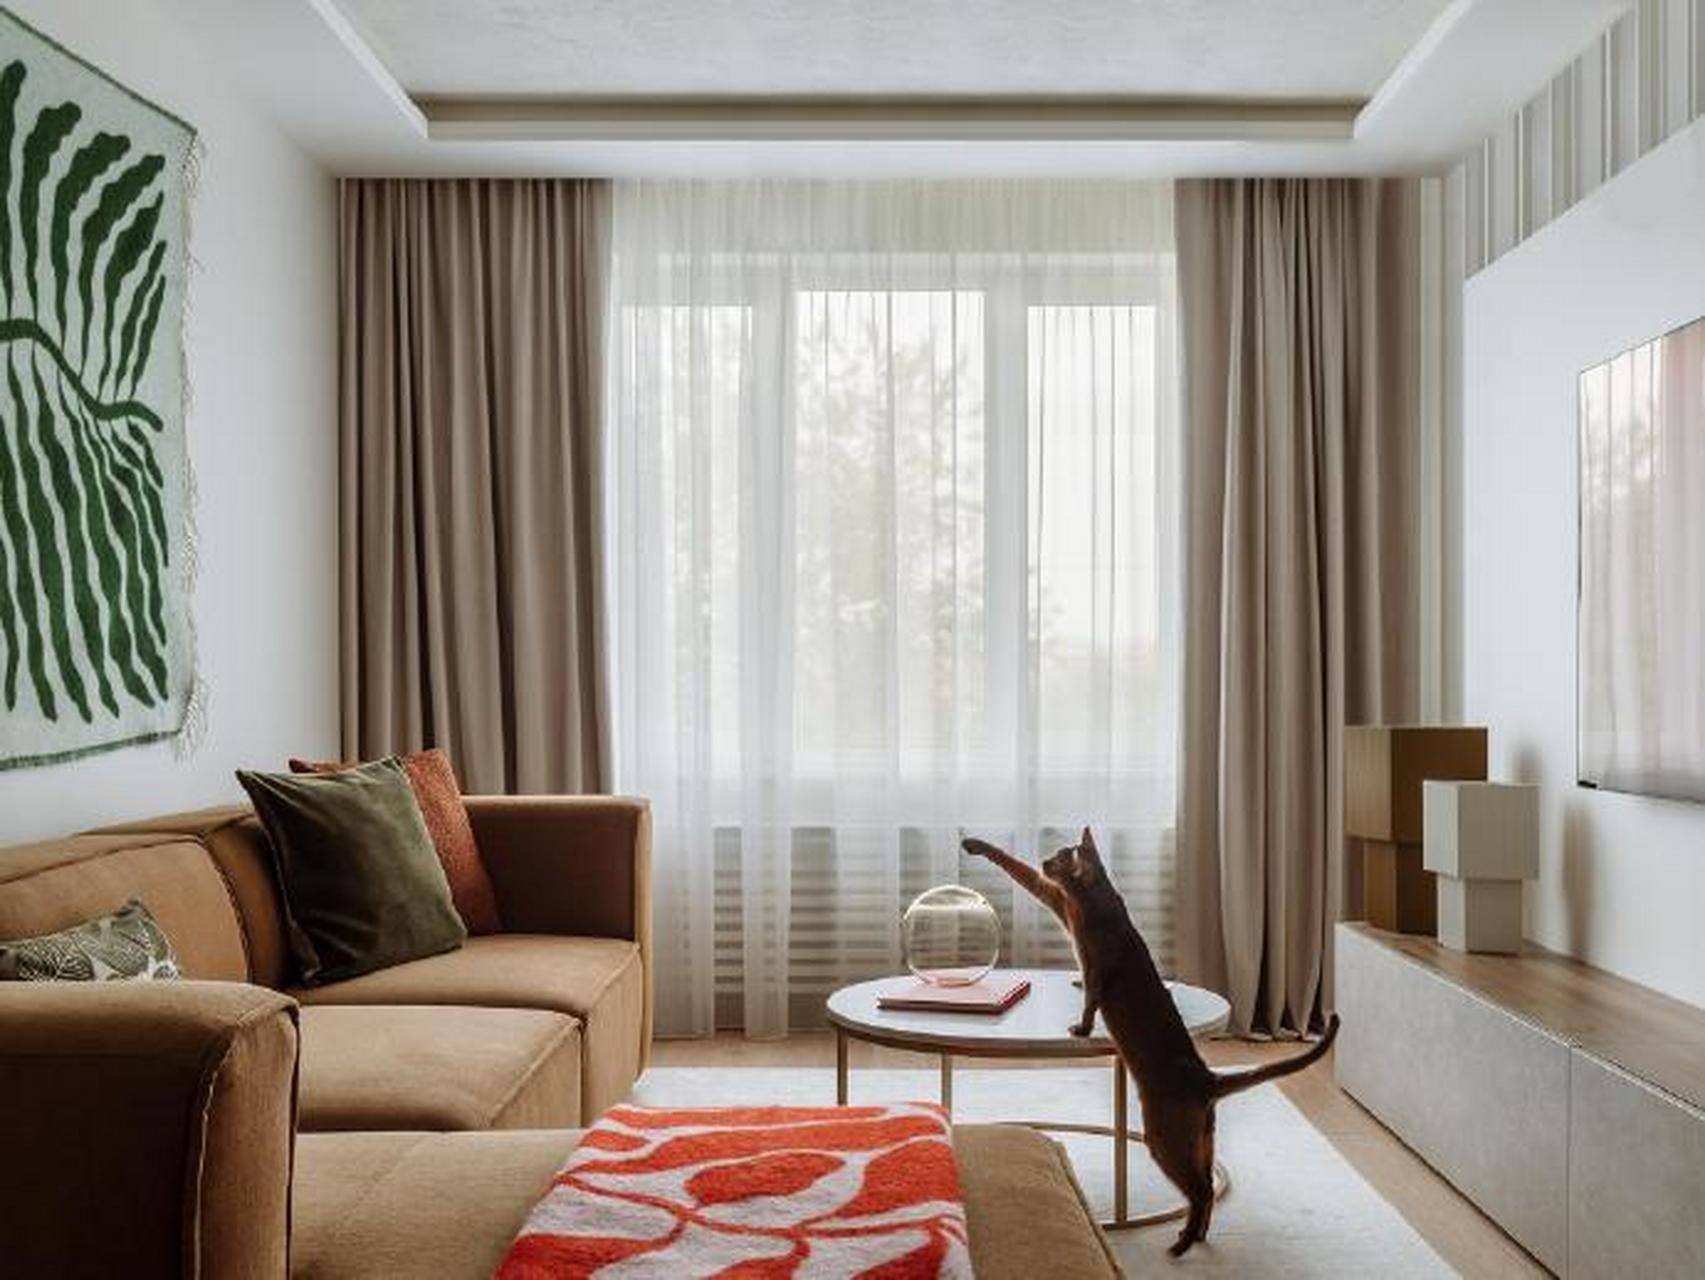 60平公寓,充分利用空间,焦糖色沙发呼应卧室墙面,整体温柔耐看